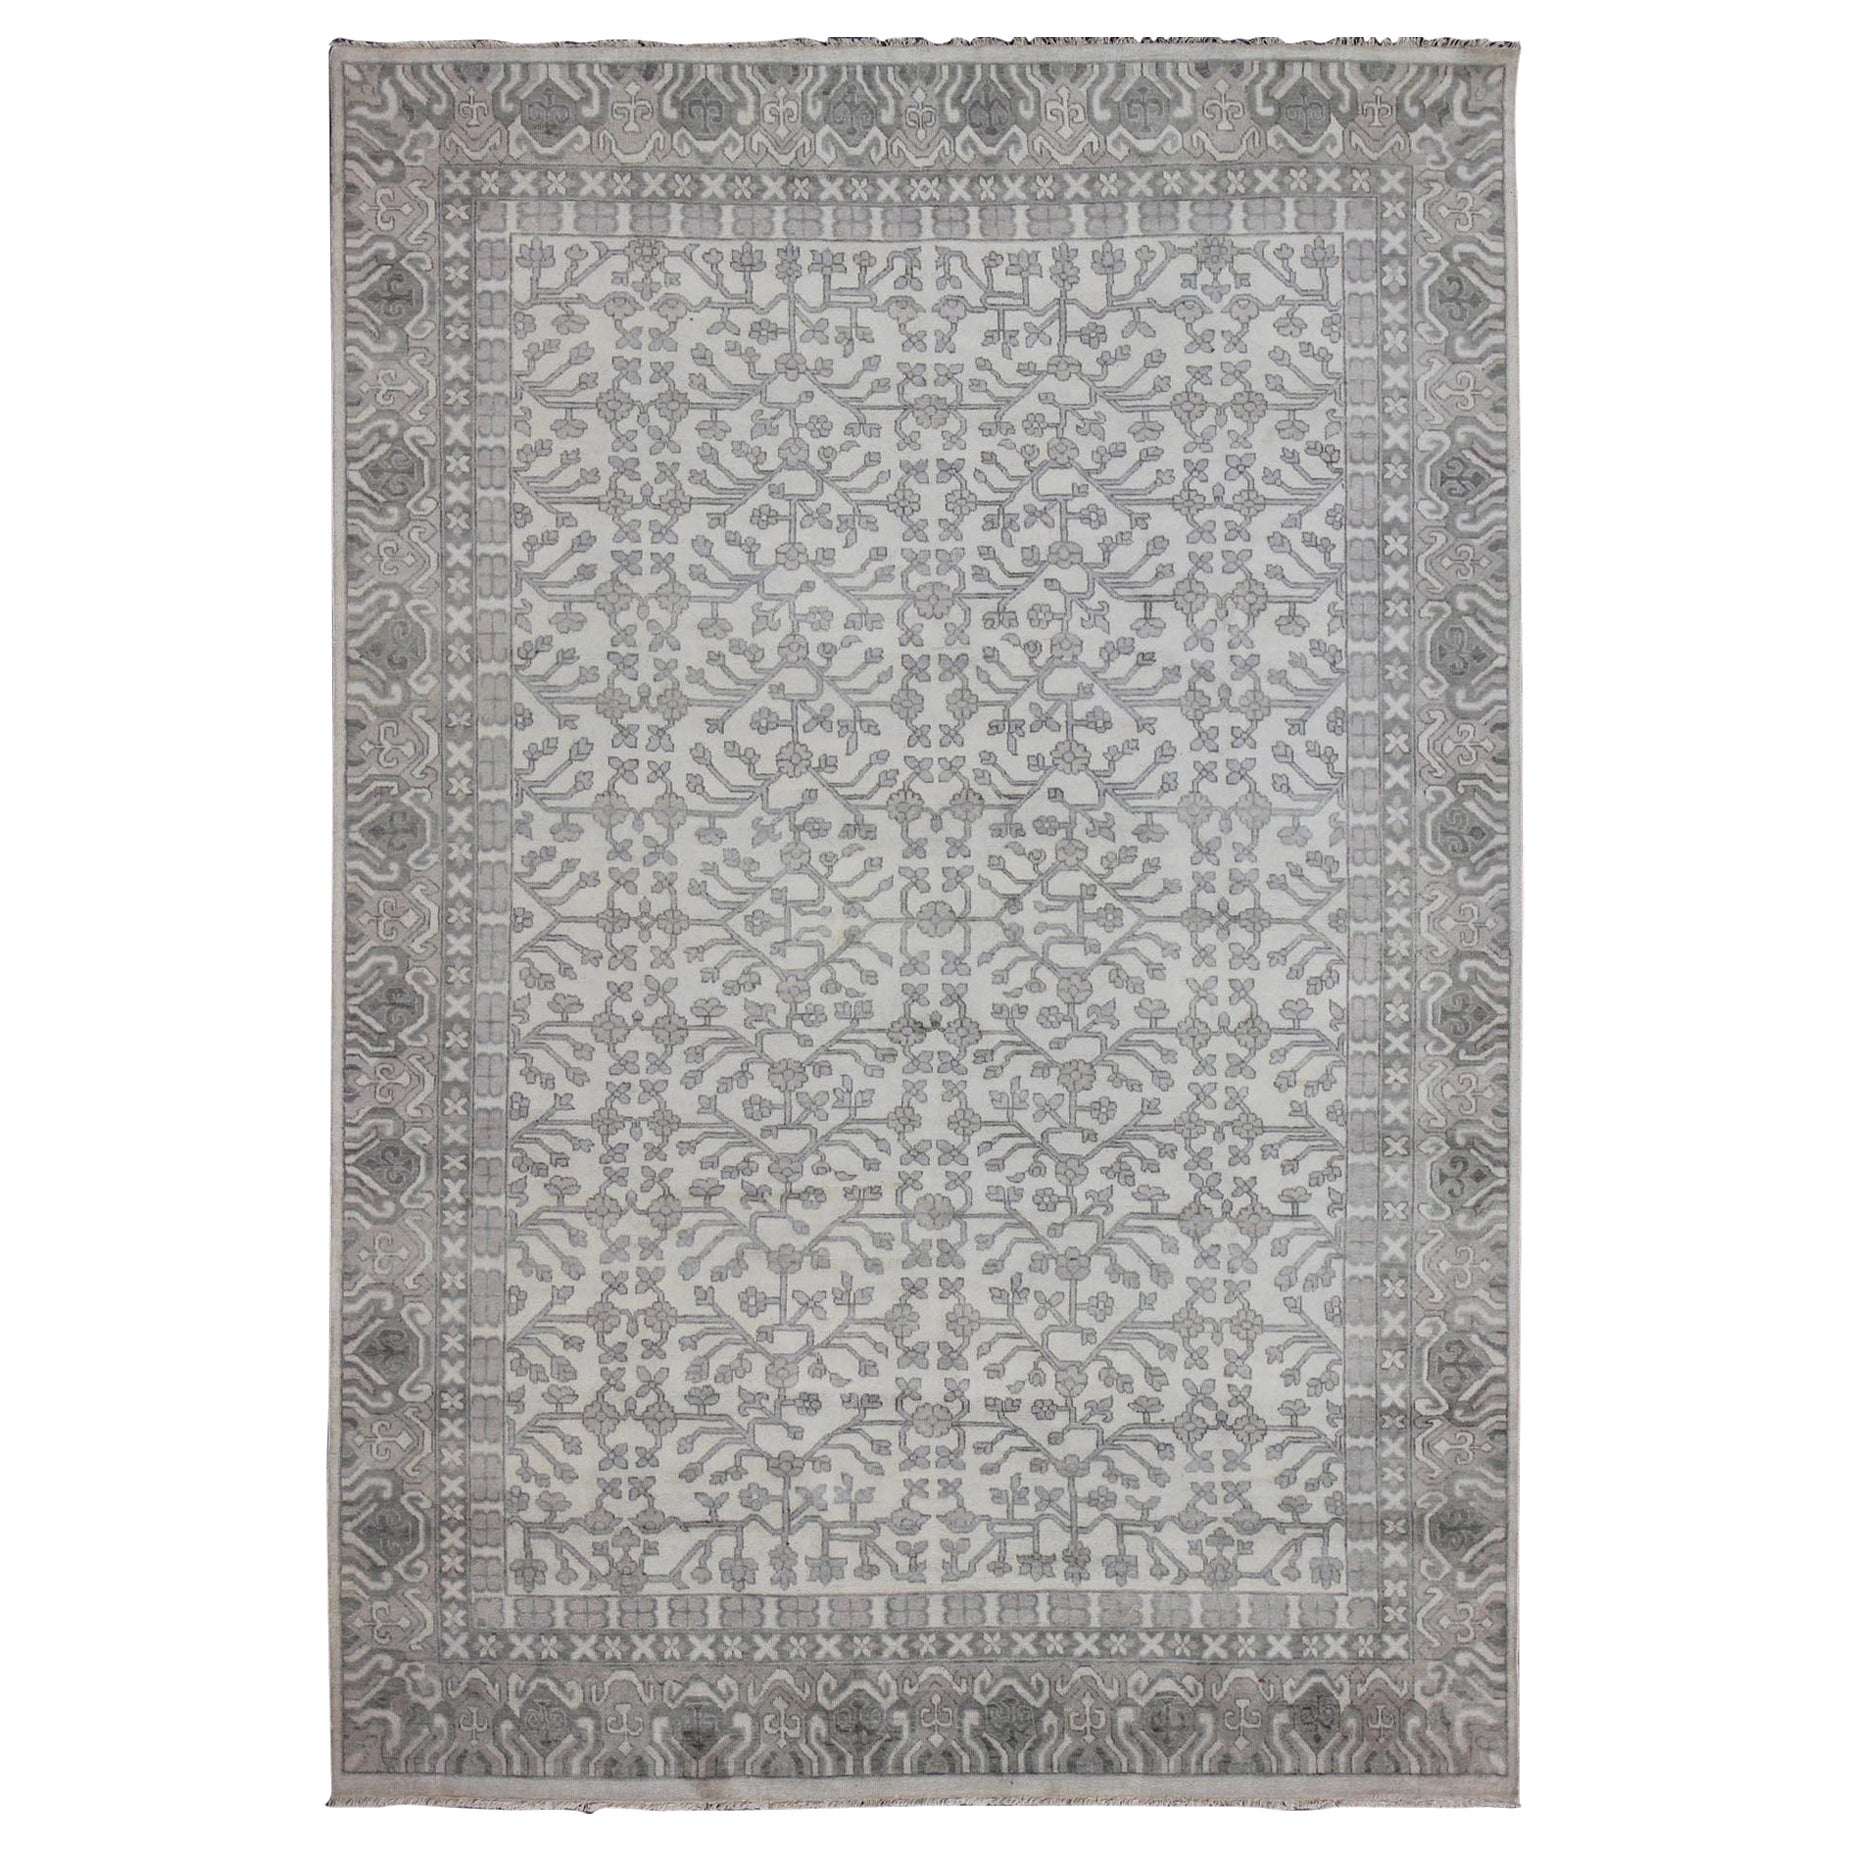 Keivan Woven Arts Handgeknüpfter Khotan-Teppich aus Wolle mit All-Over-Design  9'6 x 13'6